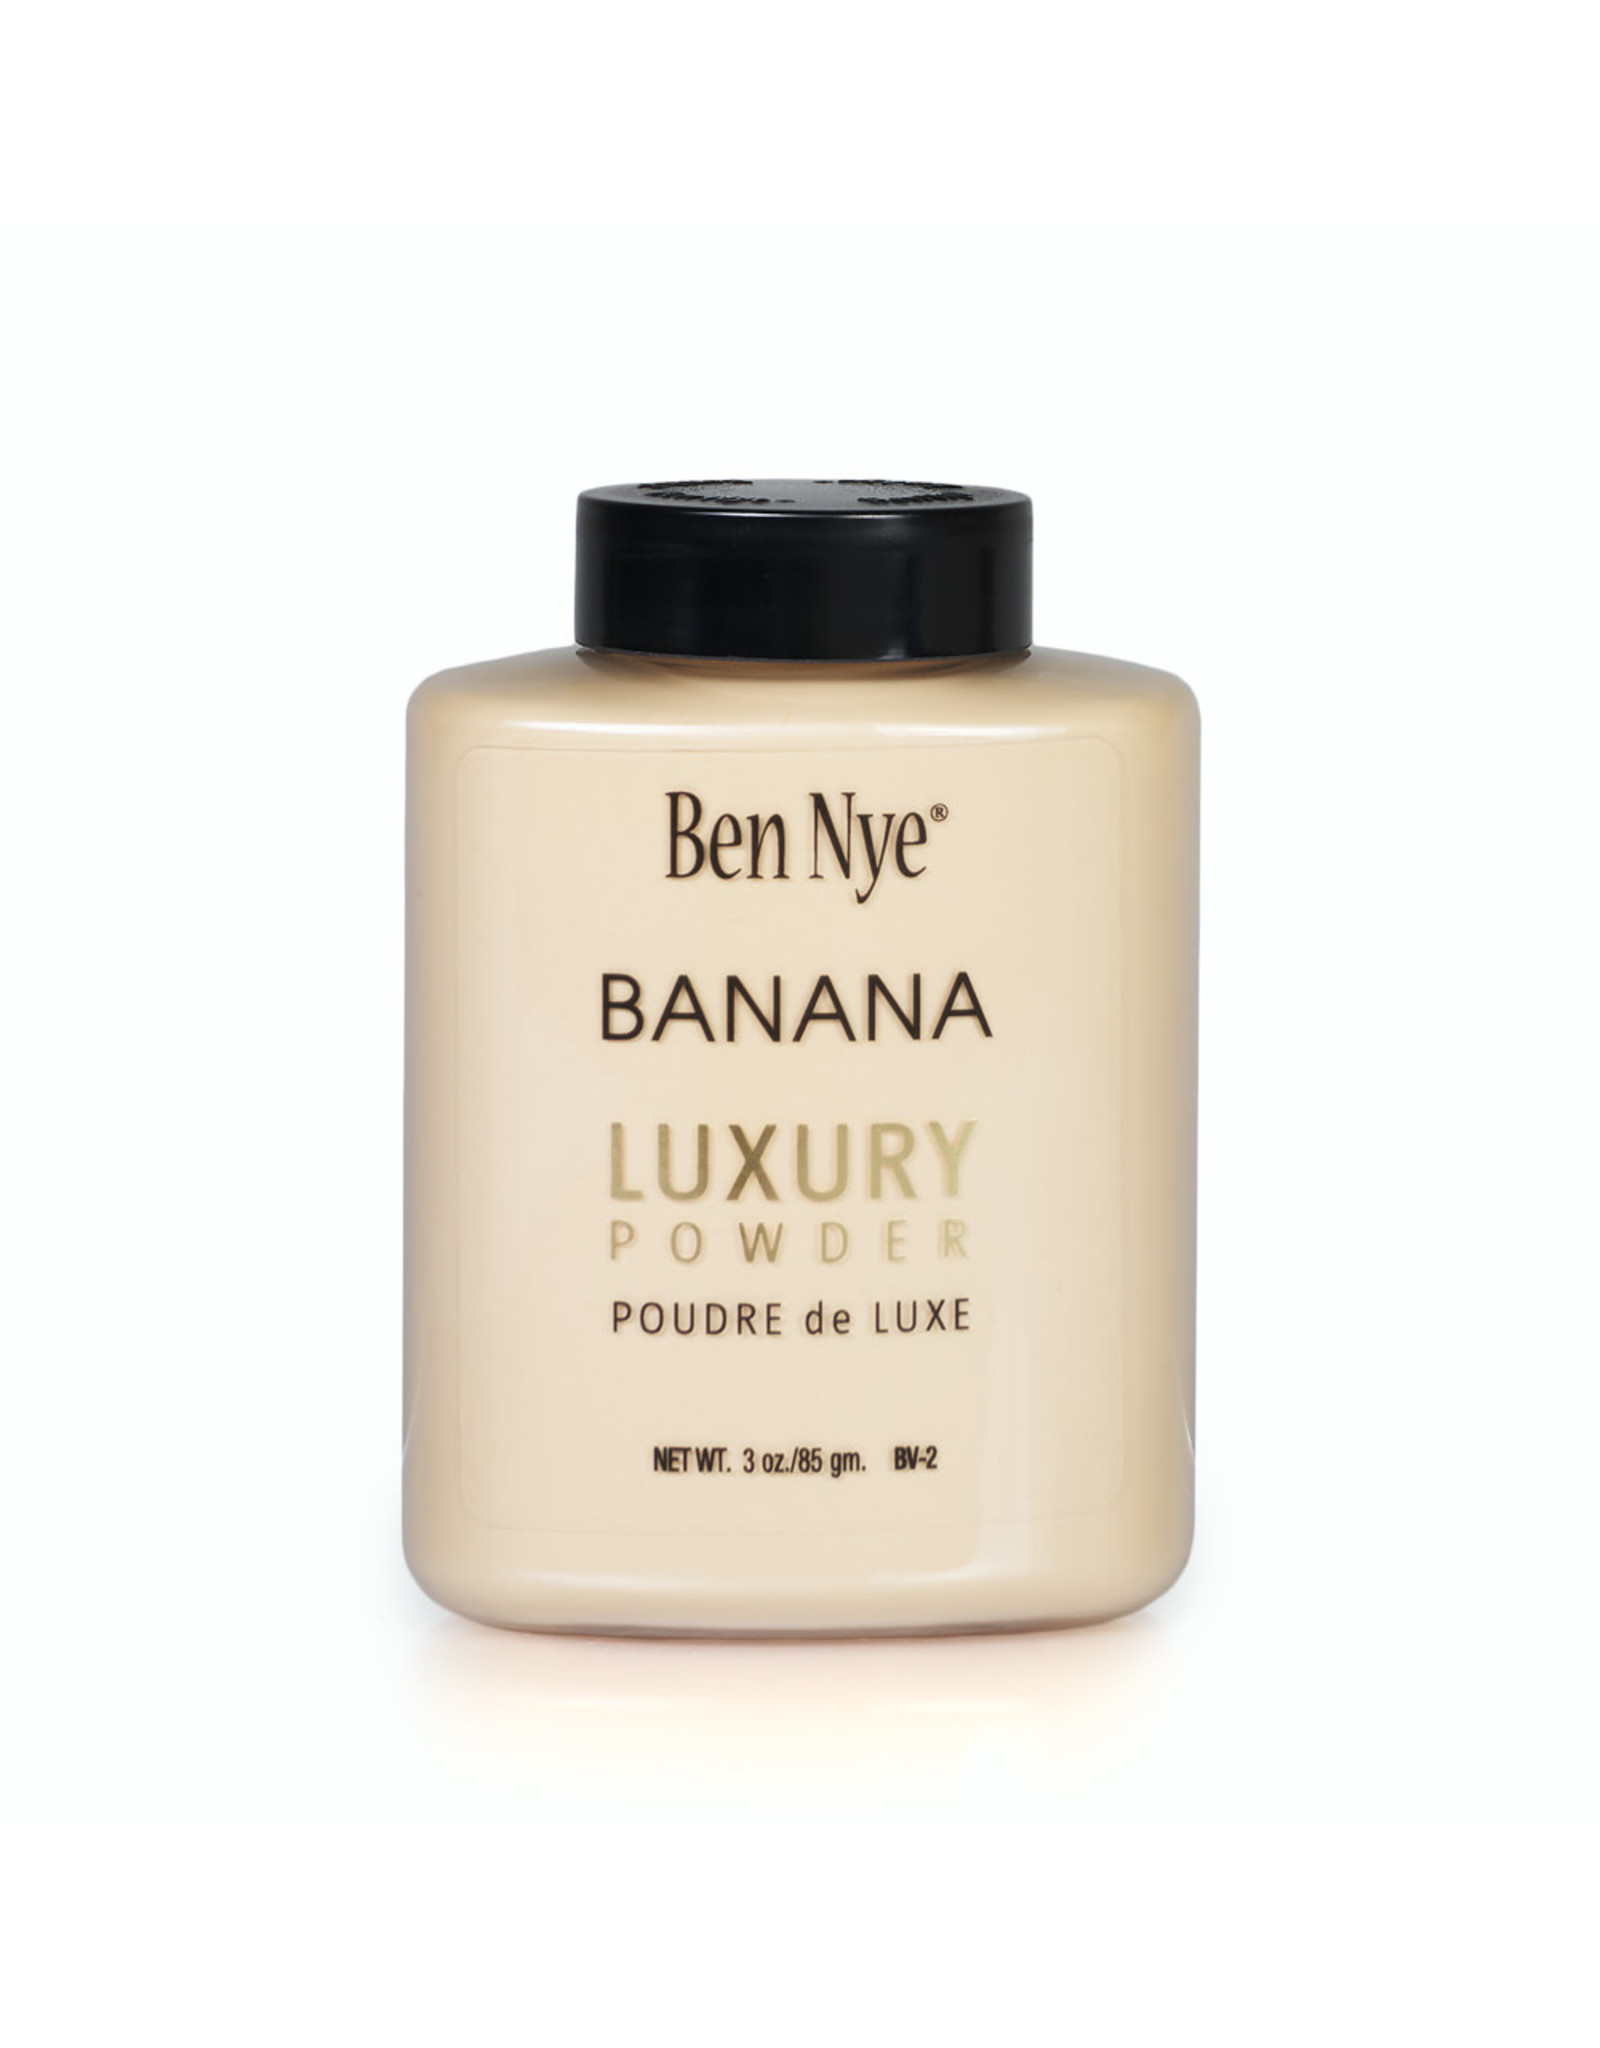 Ben Nye Ben Nye Luxury Powder Banana